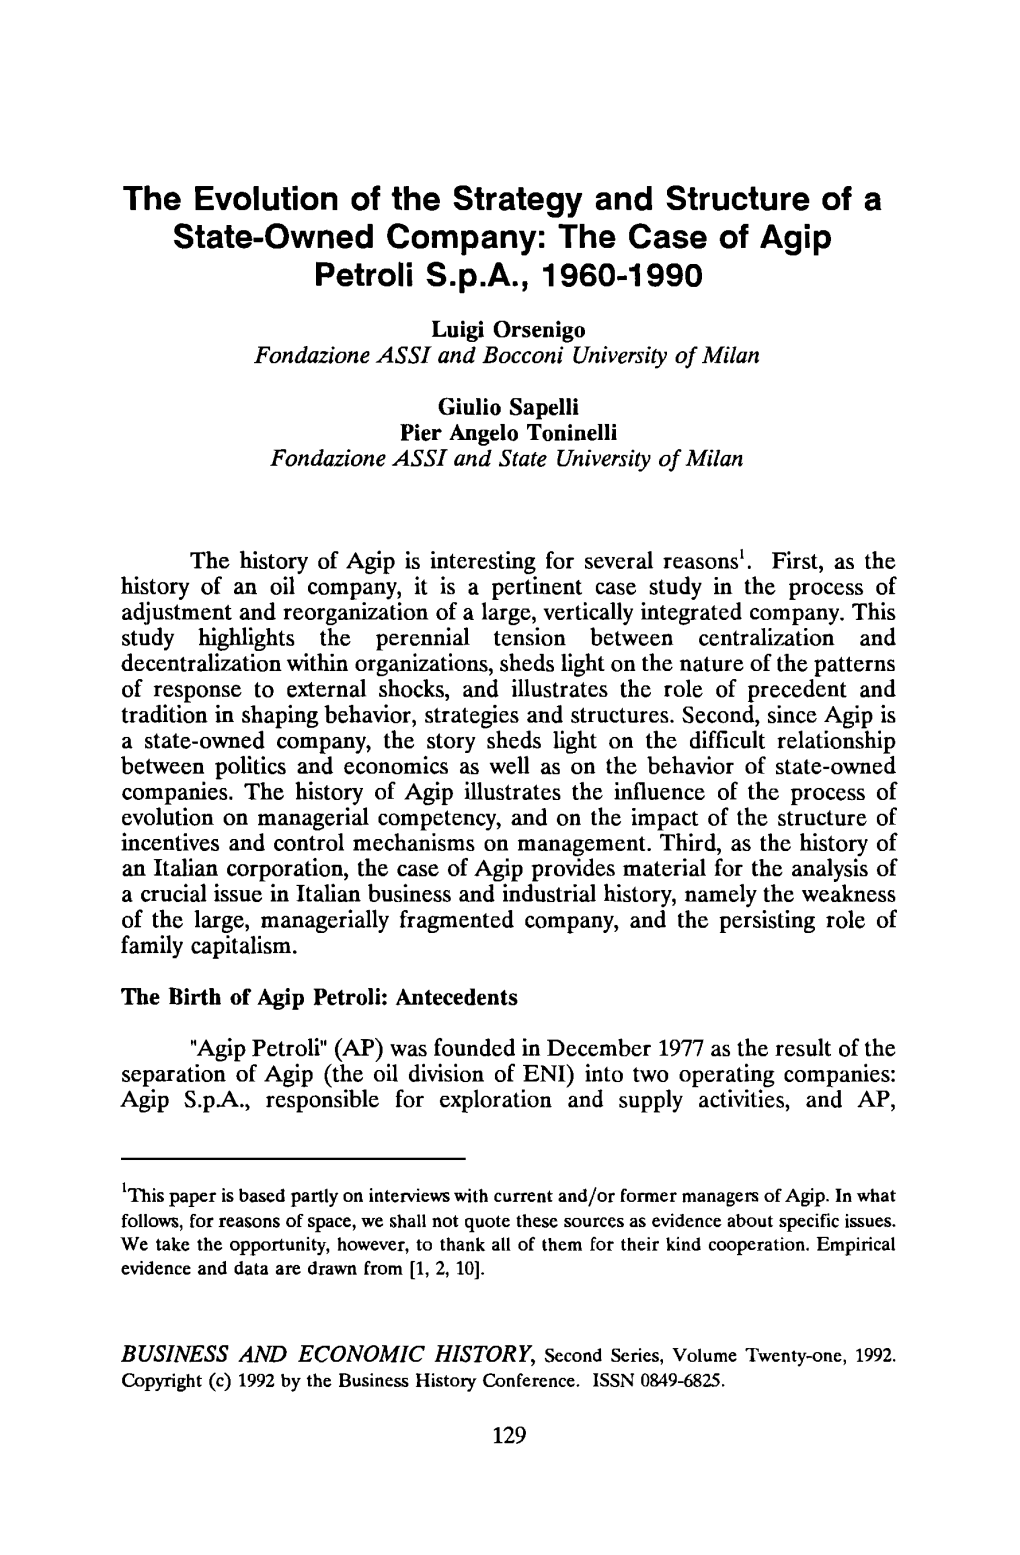 The Case of Agip Petroli Spa, 1960-1990